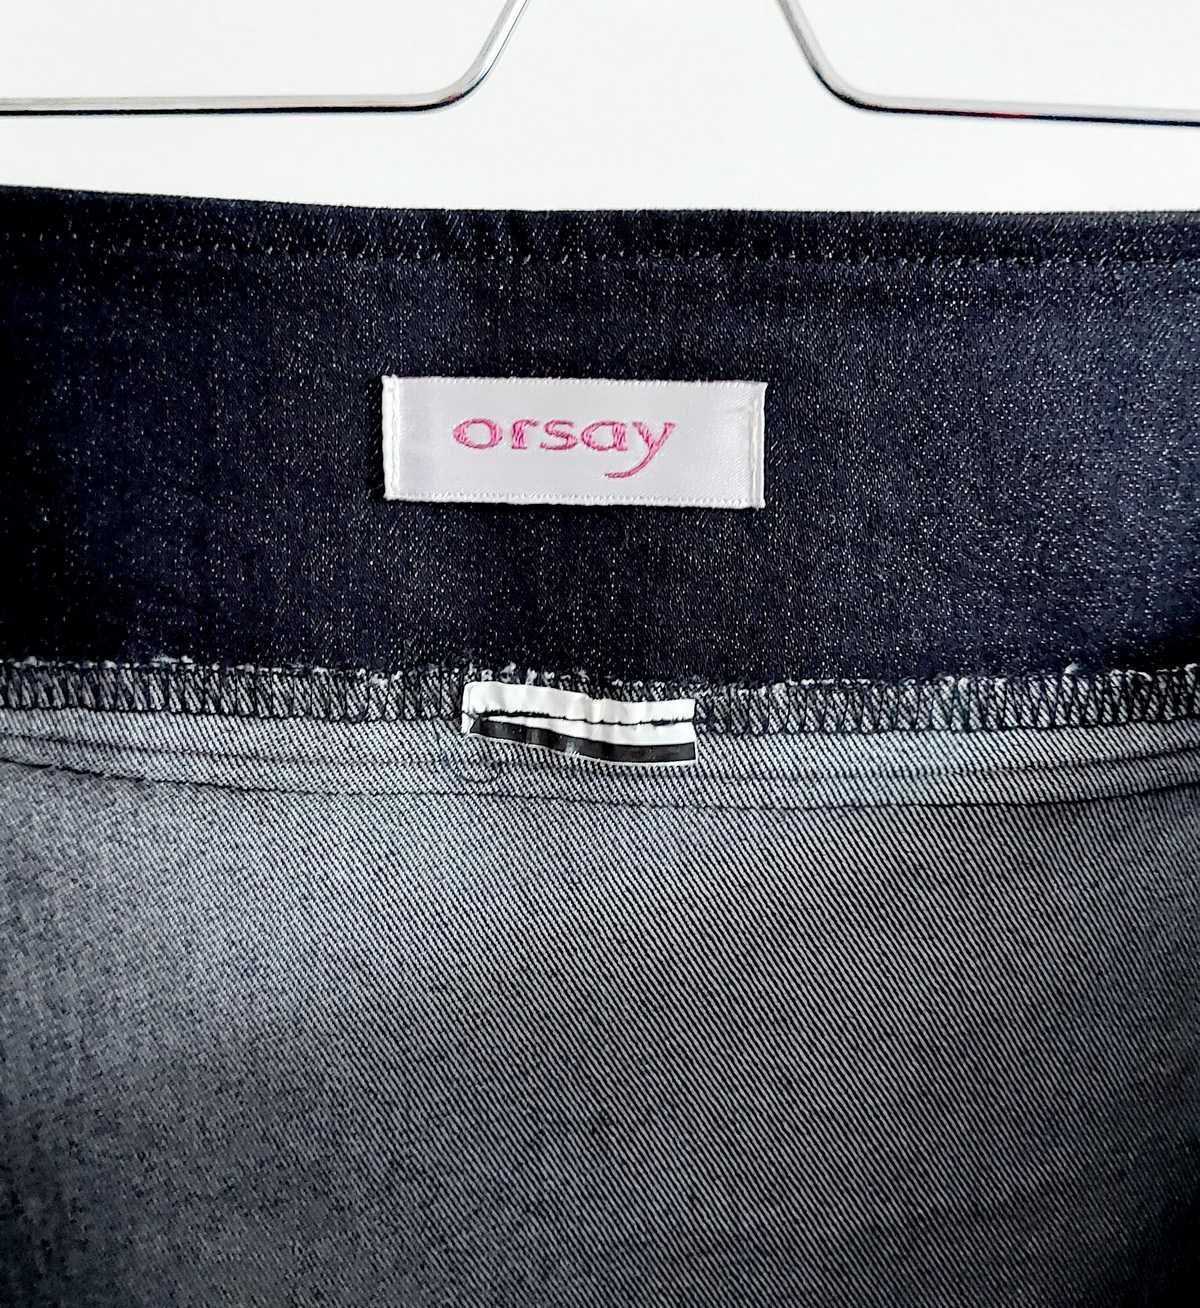 Spódnica ołówkowa przed kolano, Orsay rozm. L